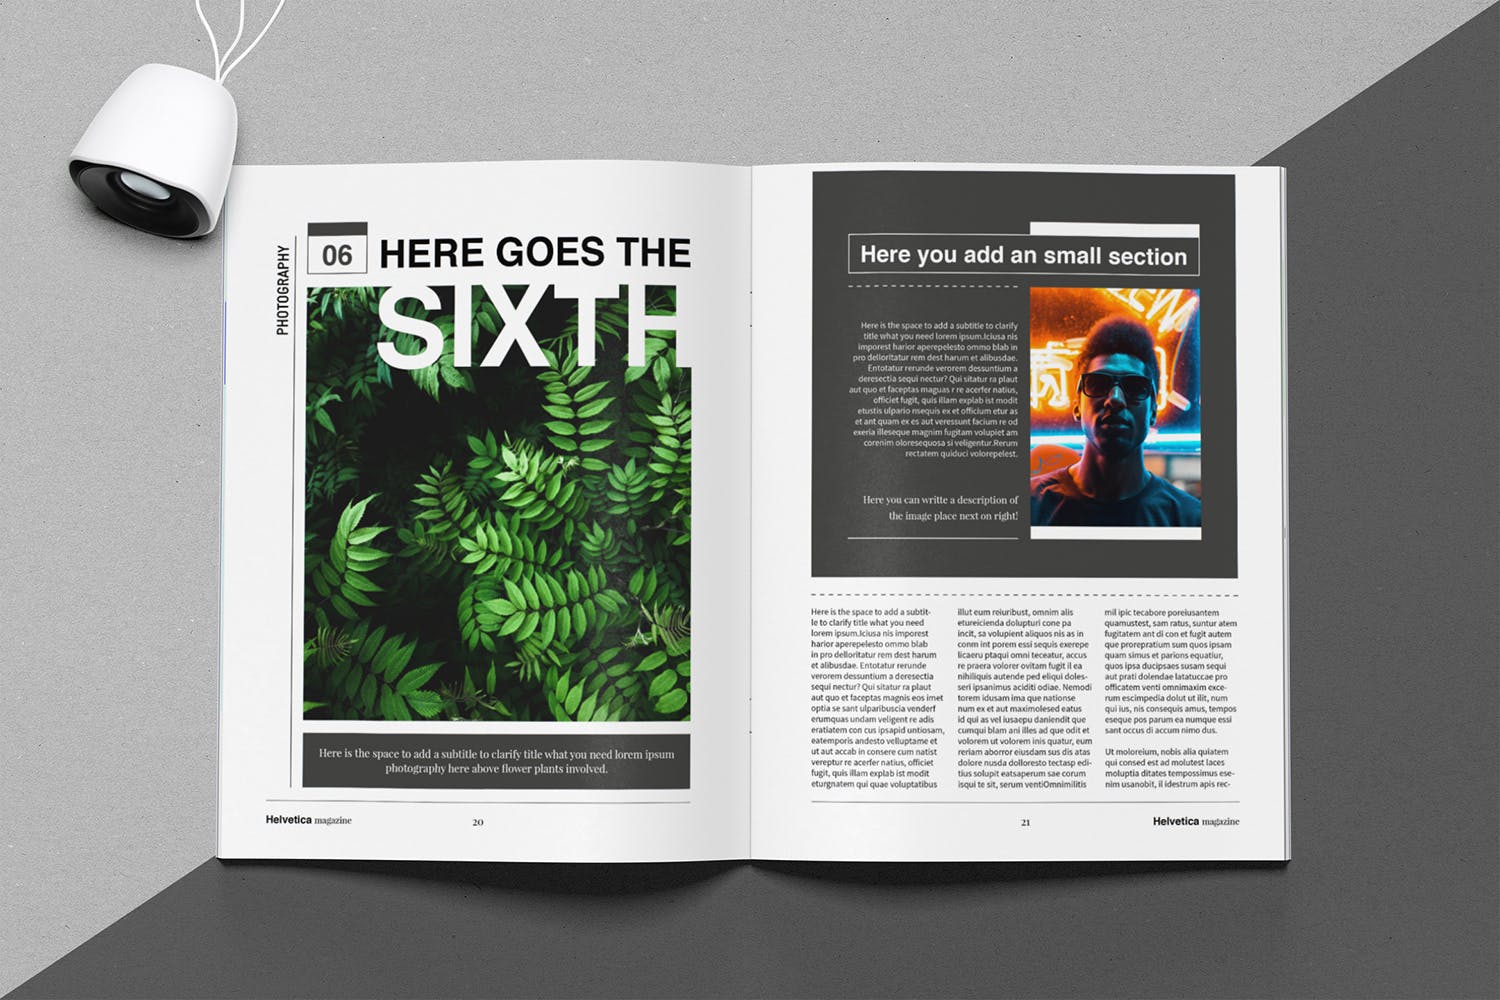 时尚行业产品评测杂志Indesign模板下载 Helvetica Magazine Indesign Template插图(10)